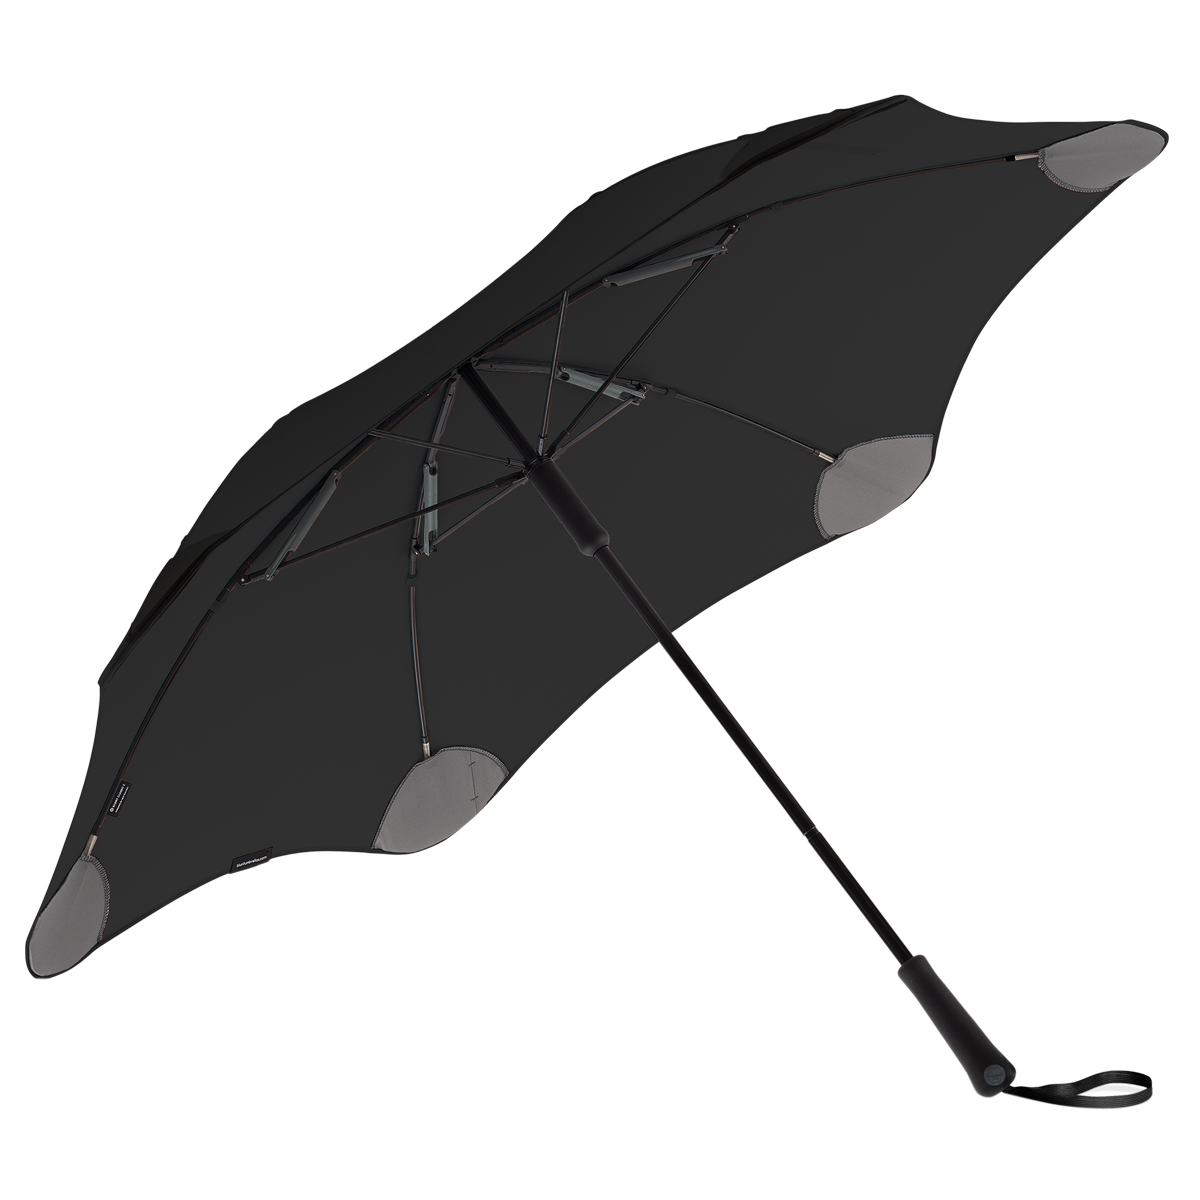 ブラント BLUNT 長傘 雨傘 65cm クラシック CLASSIC メンズ レディース 軽量 耐...